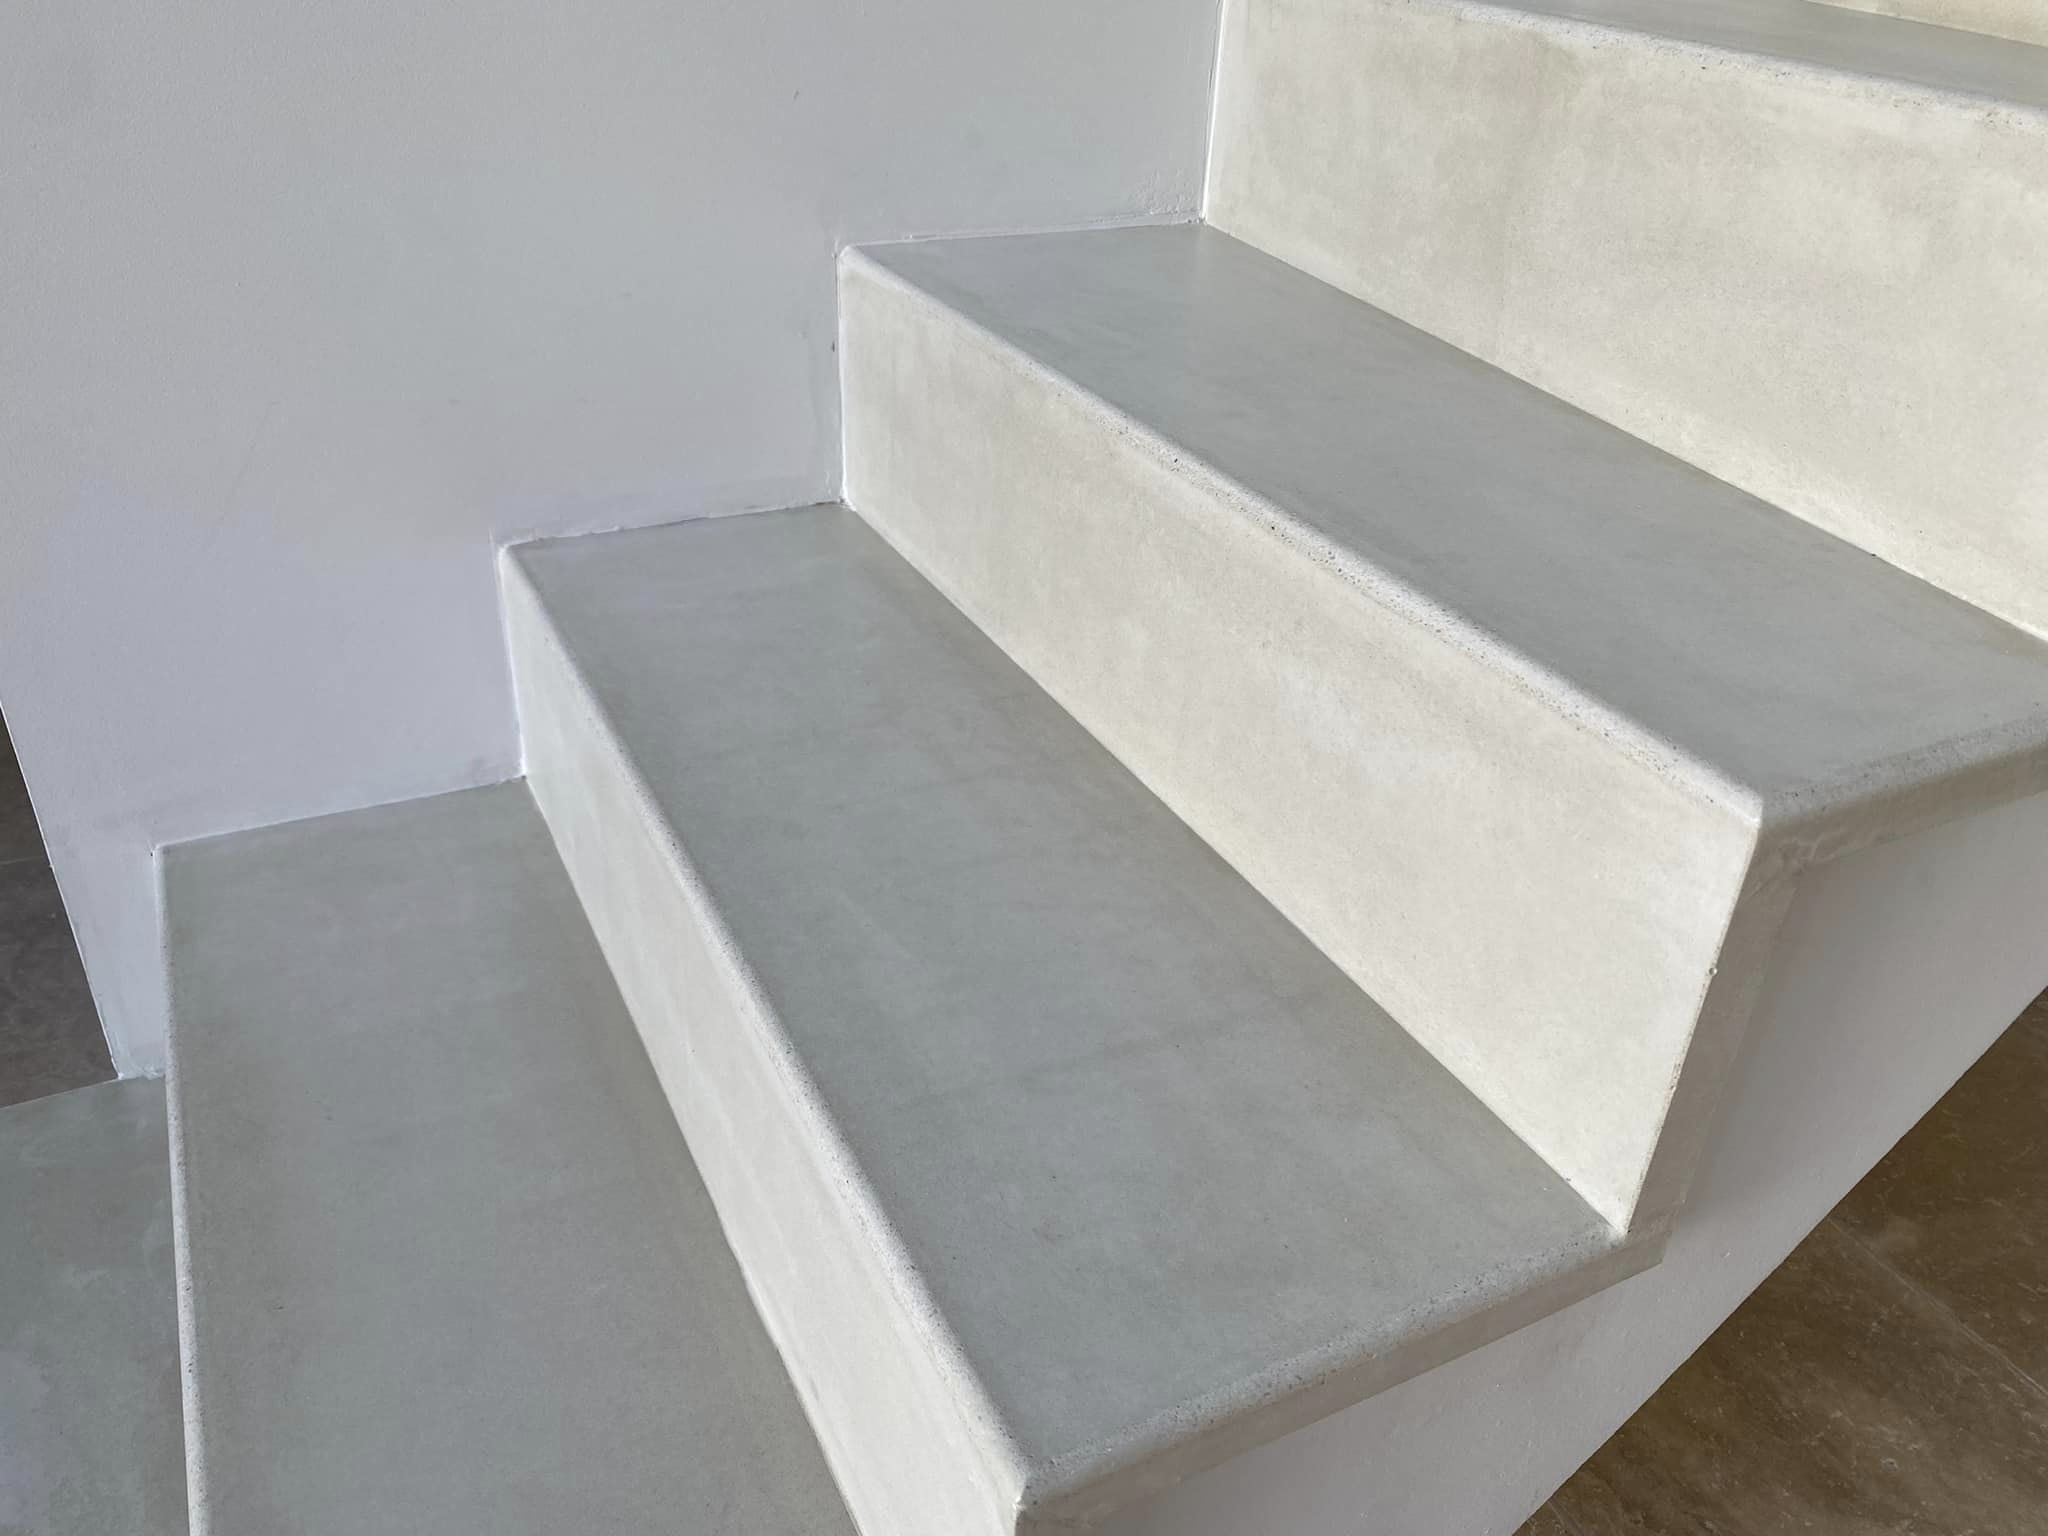 Escalier voute sarrasine – revetement beton